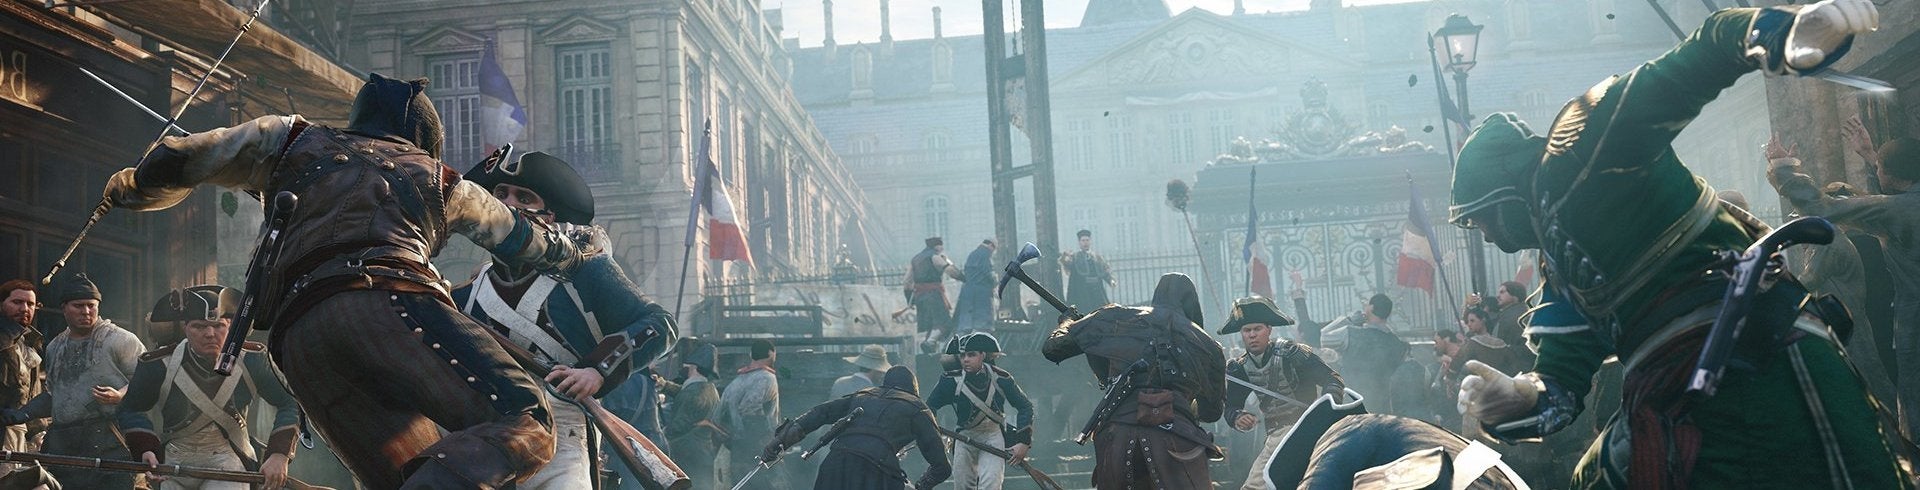 Immagine di Assassin's Creed Unity: La Soluzione Completa